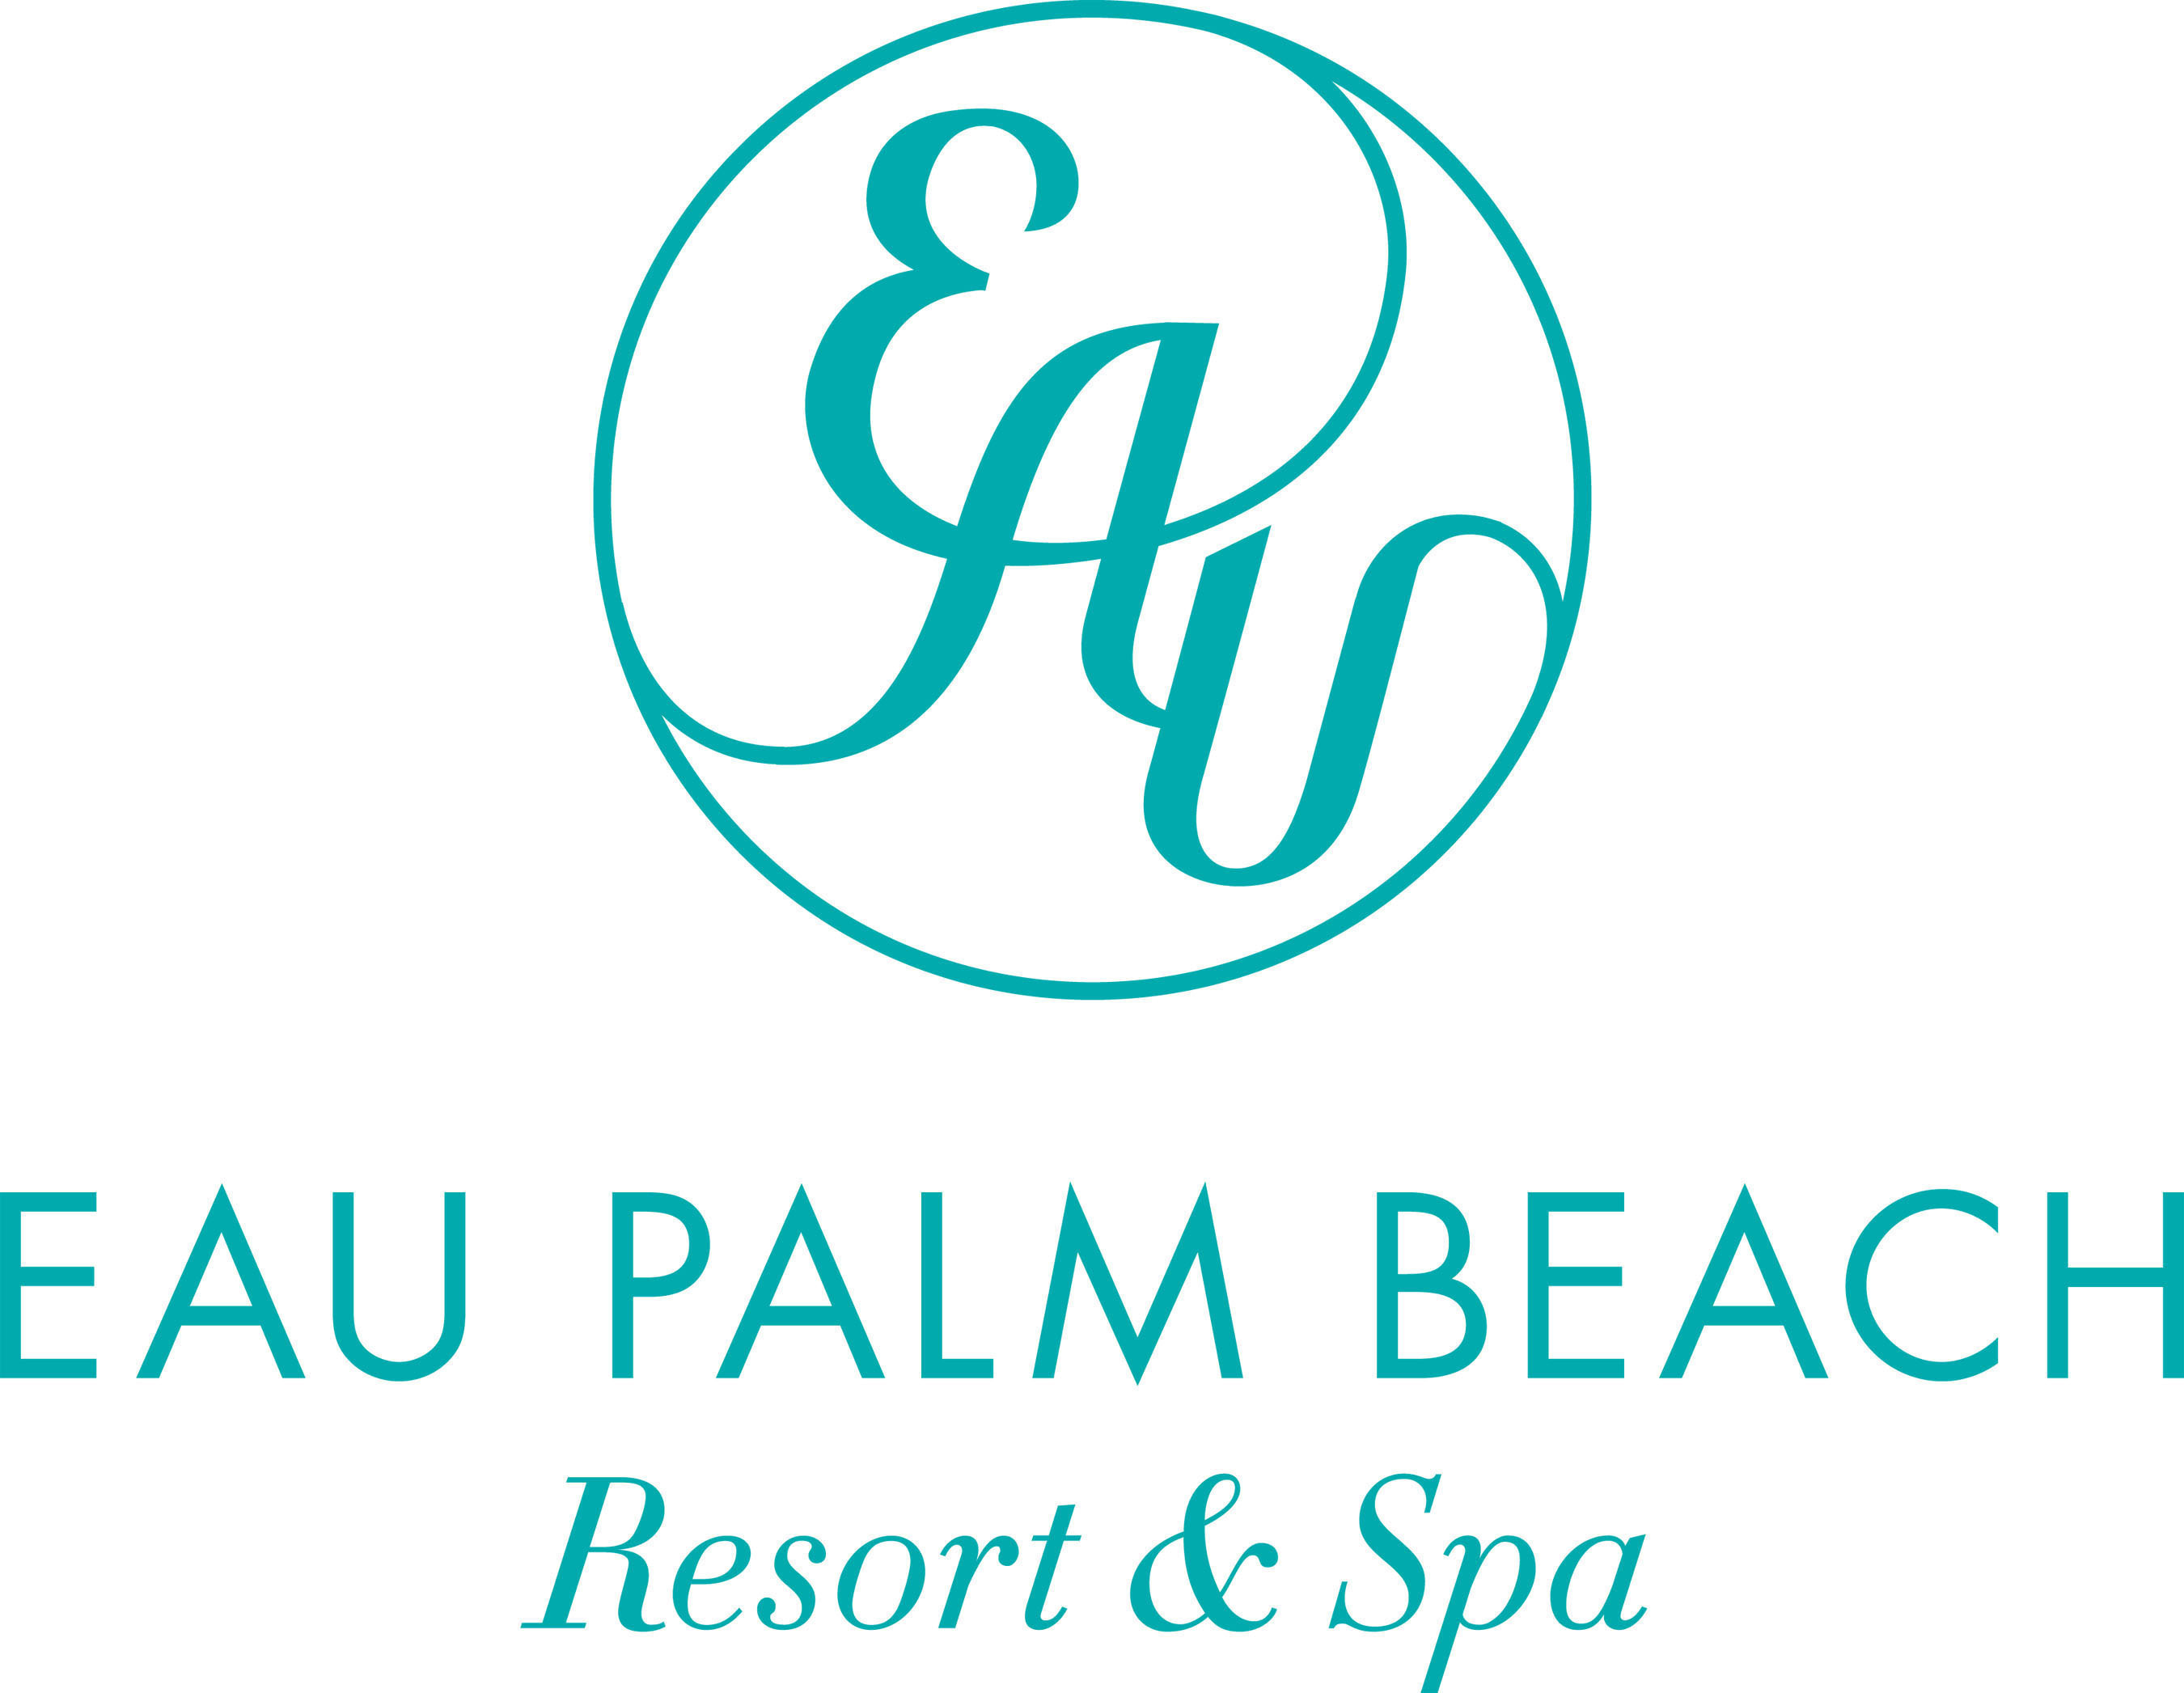 Eau Palm Beach Resort & Spa.